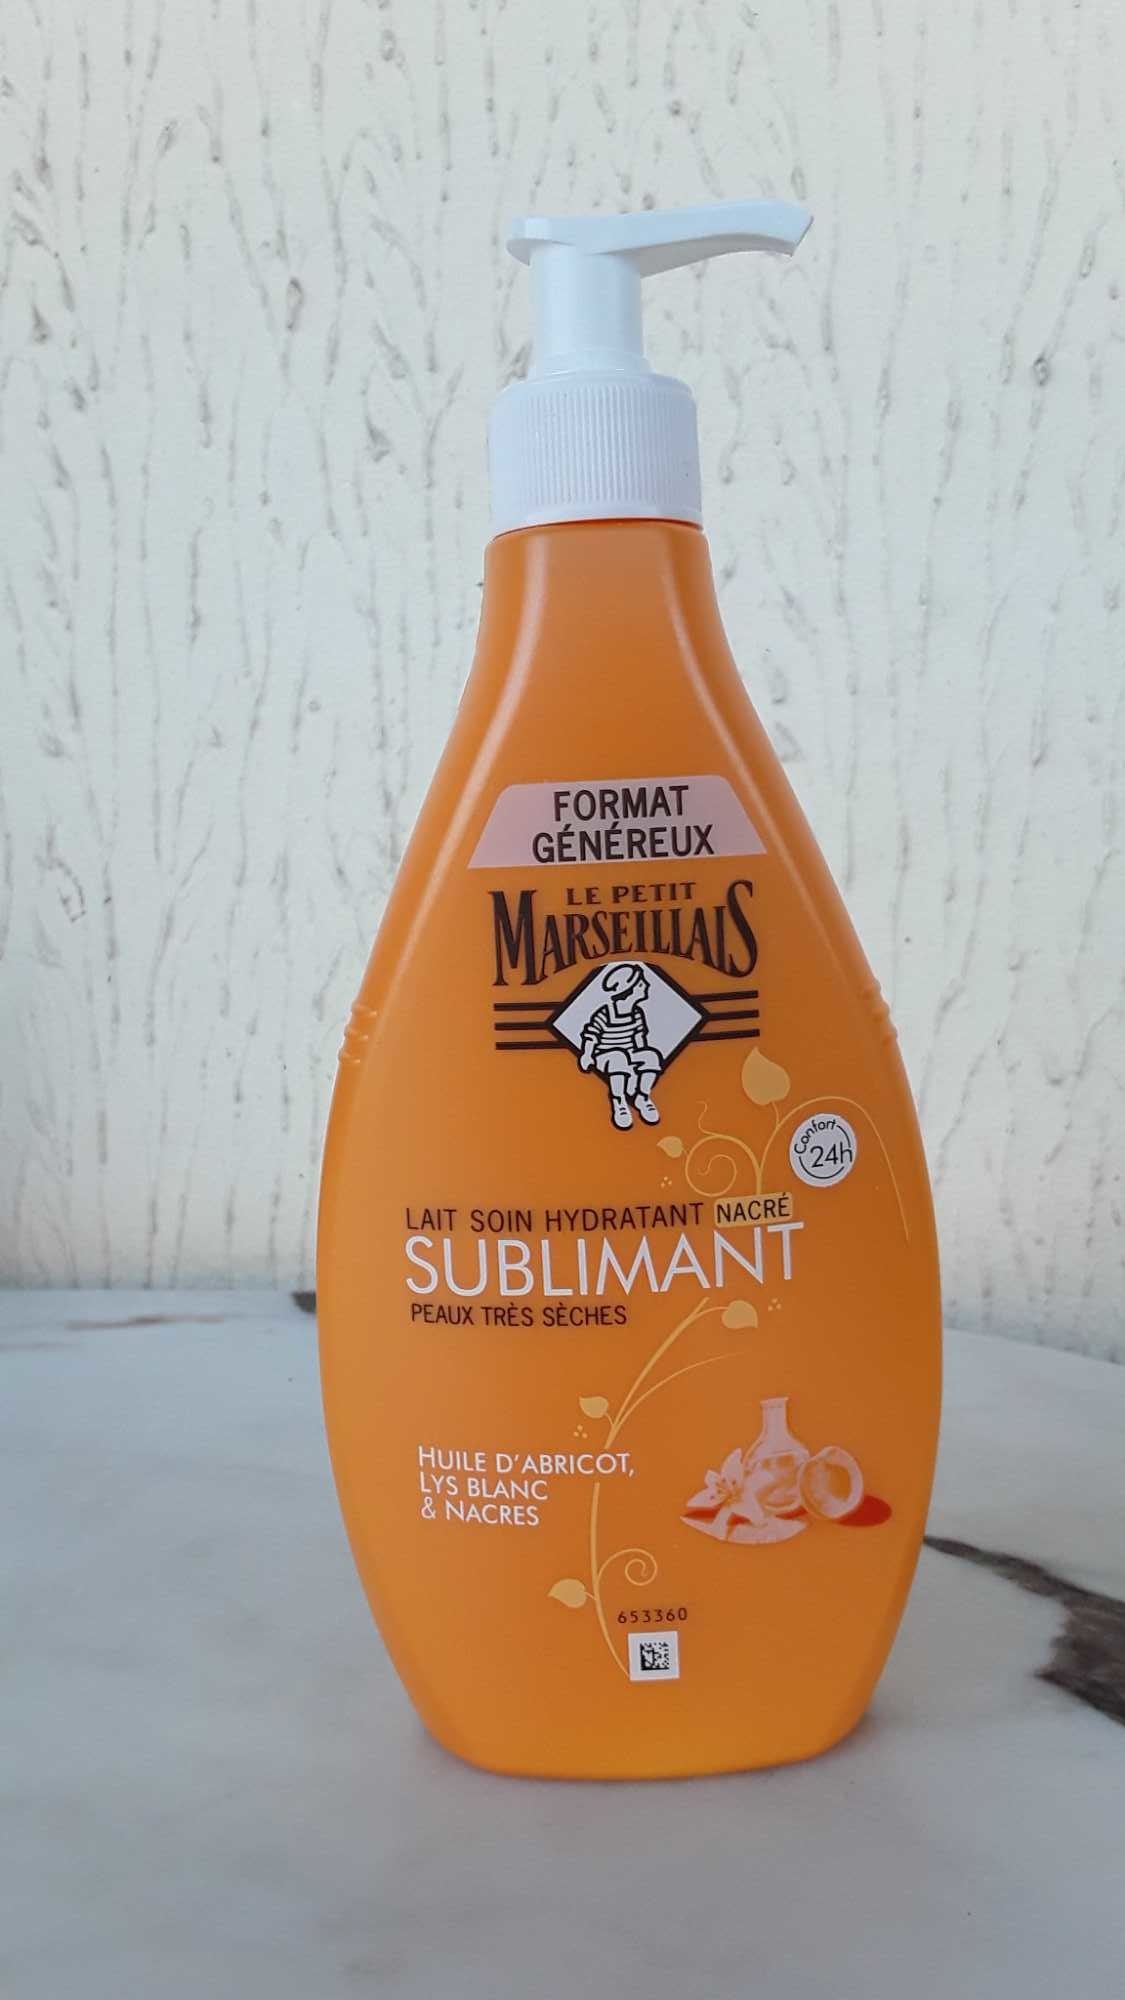 Lait soin hydratant sublimant - Product - fr